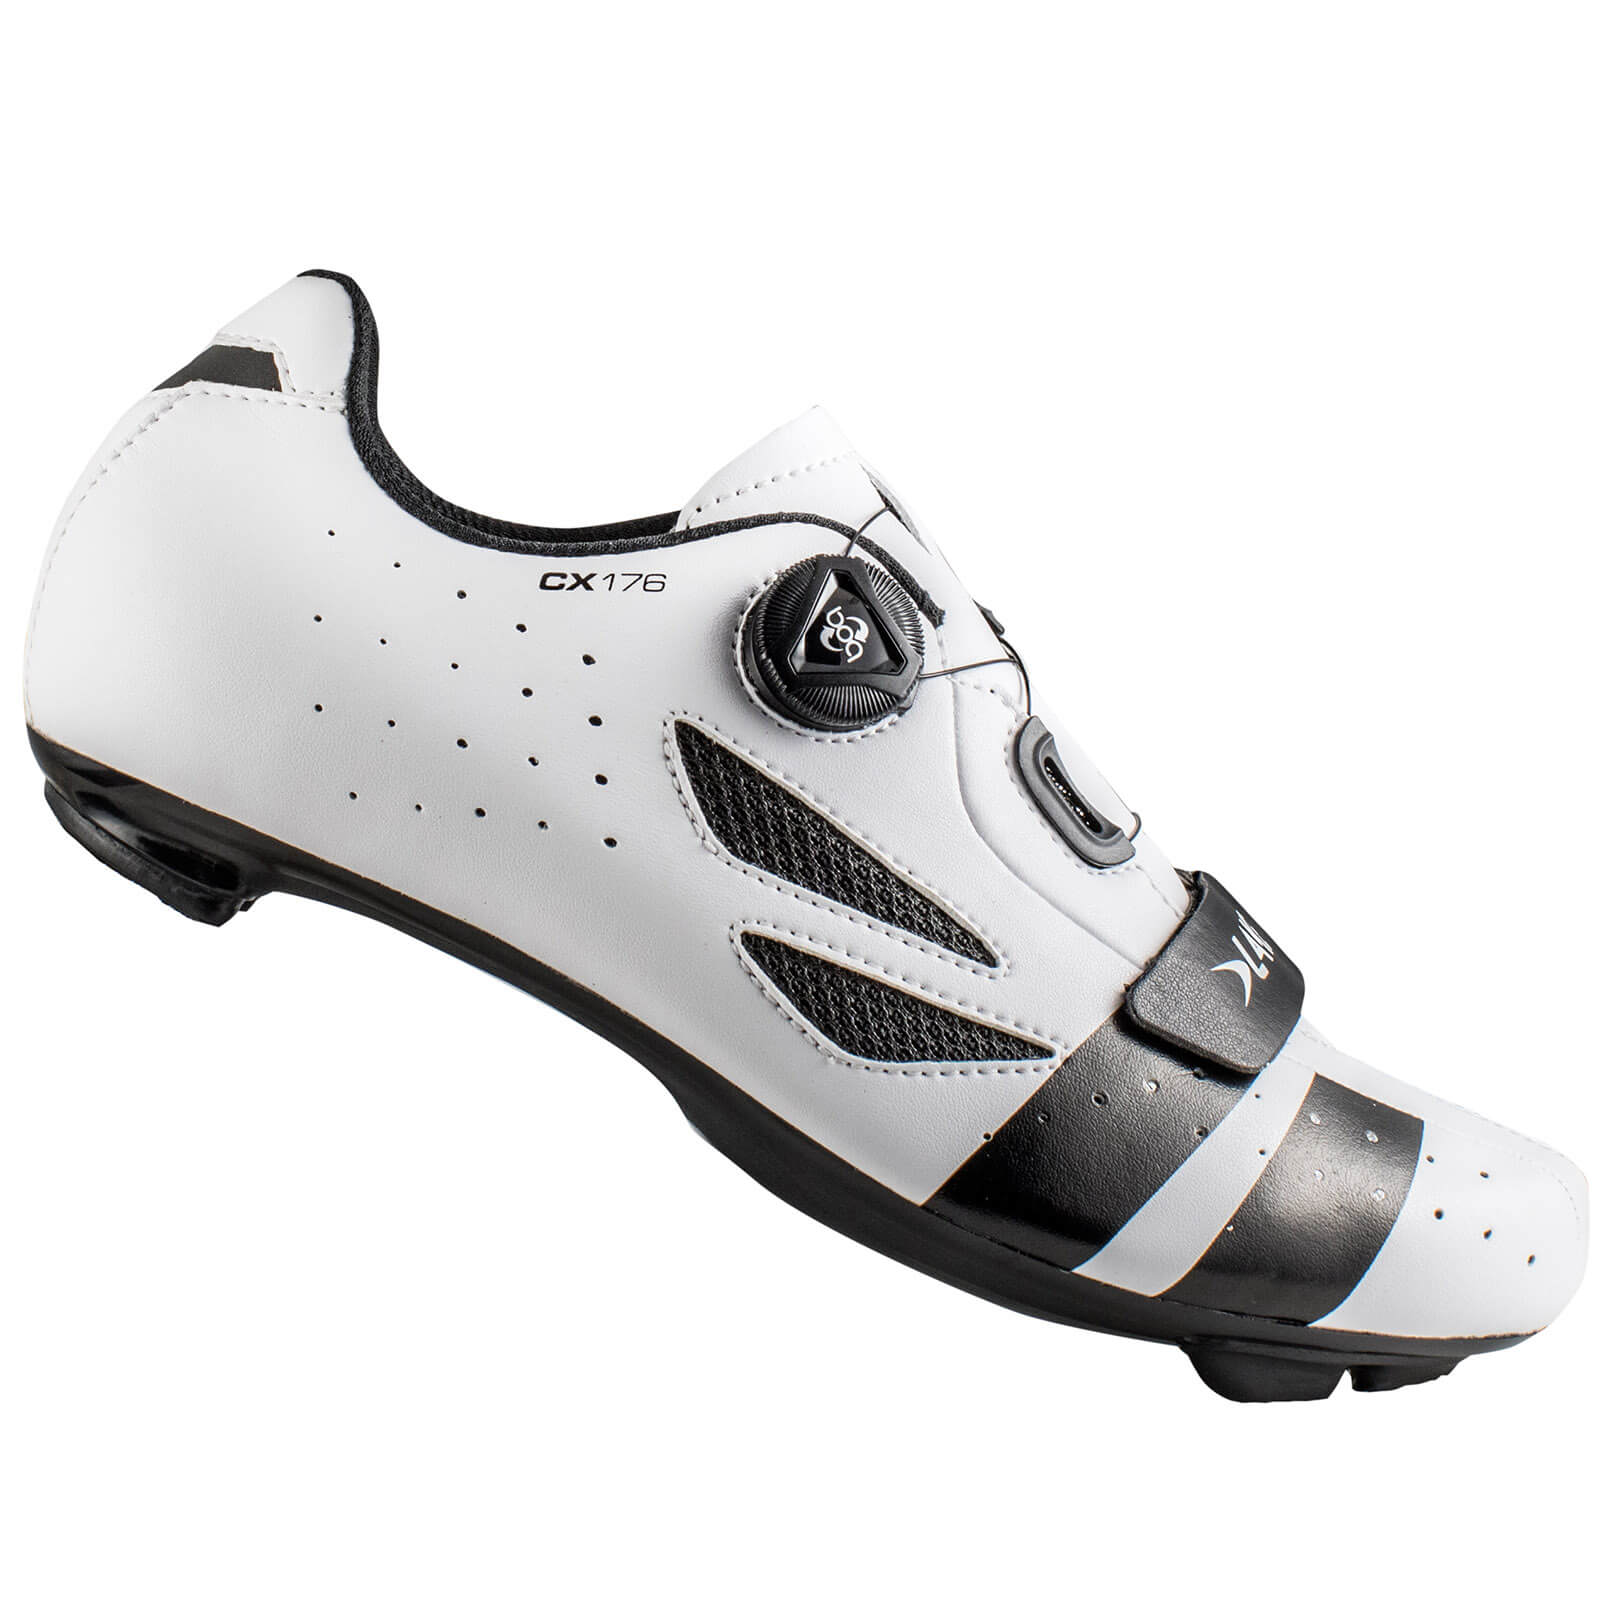 Lake CX176 Road Shoes - White/Black - EU 36